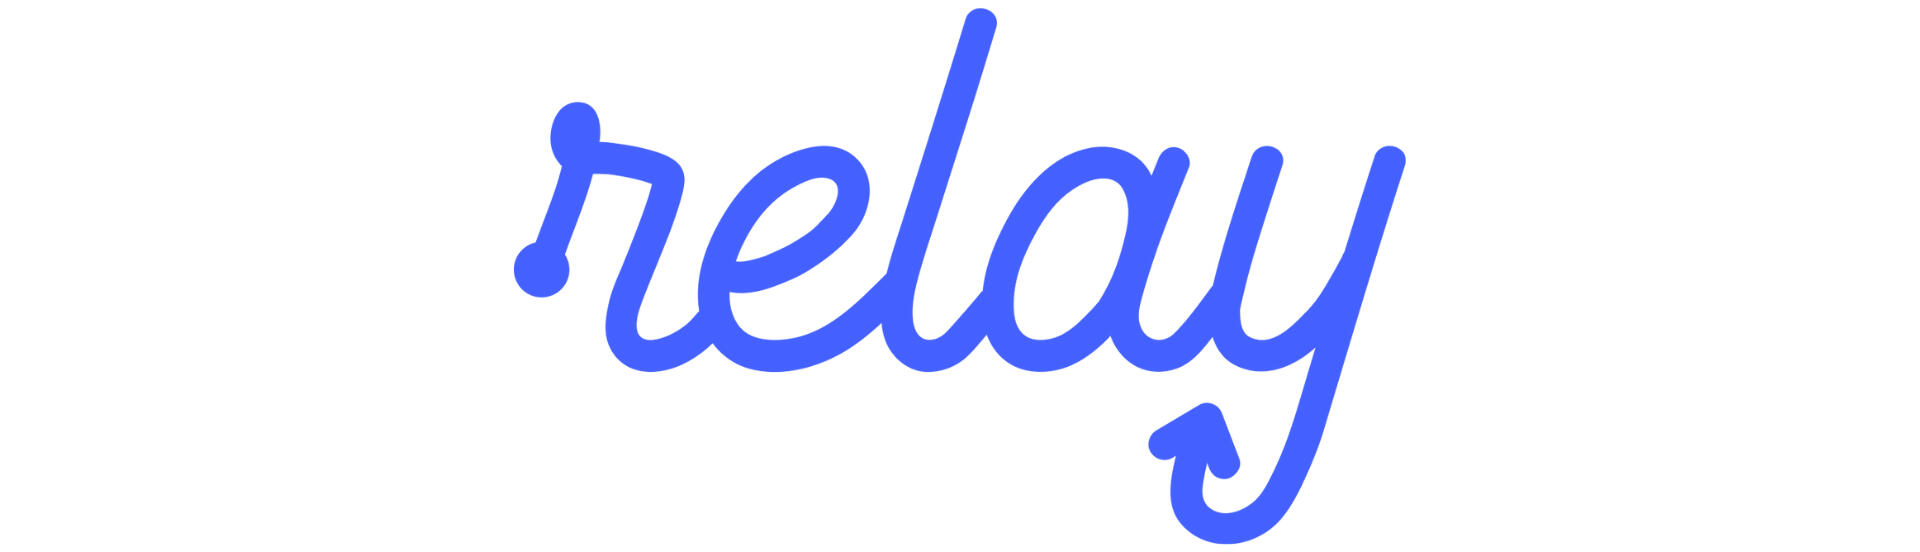 Relay.app Logo